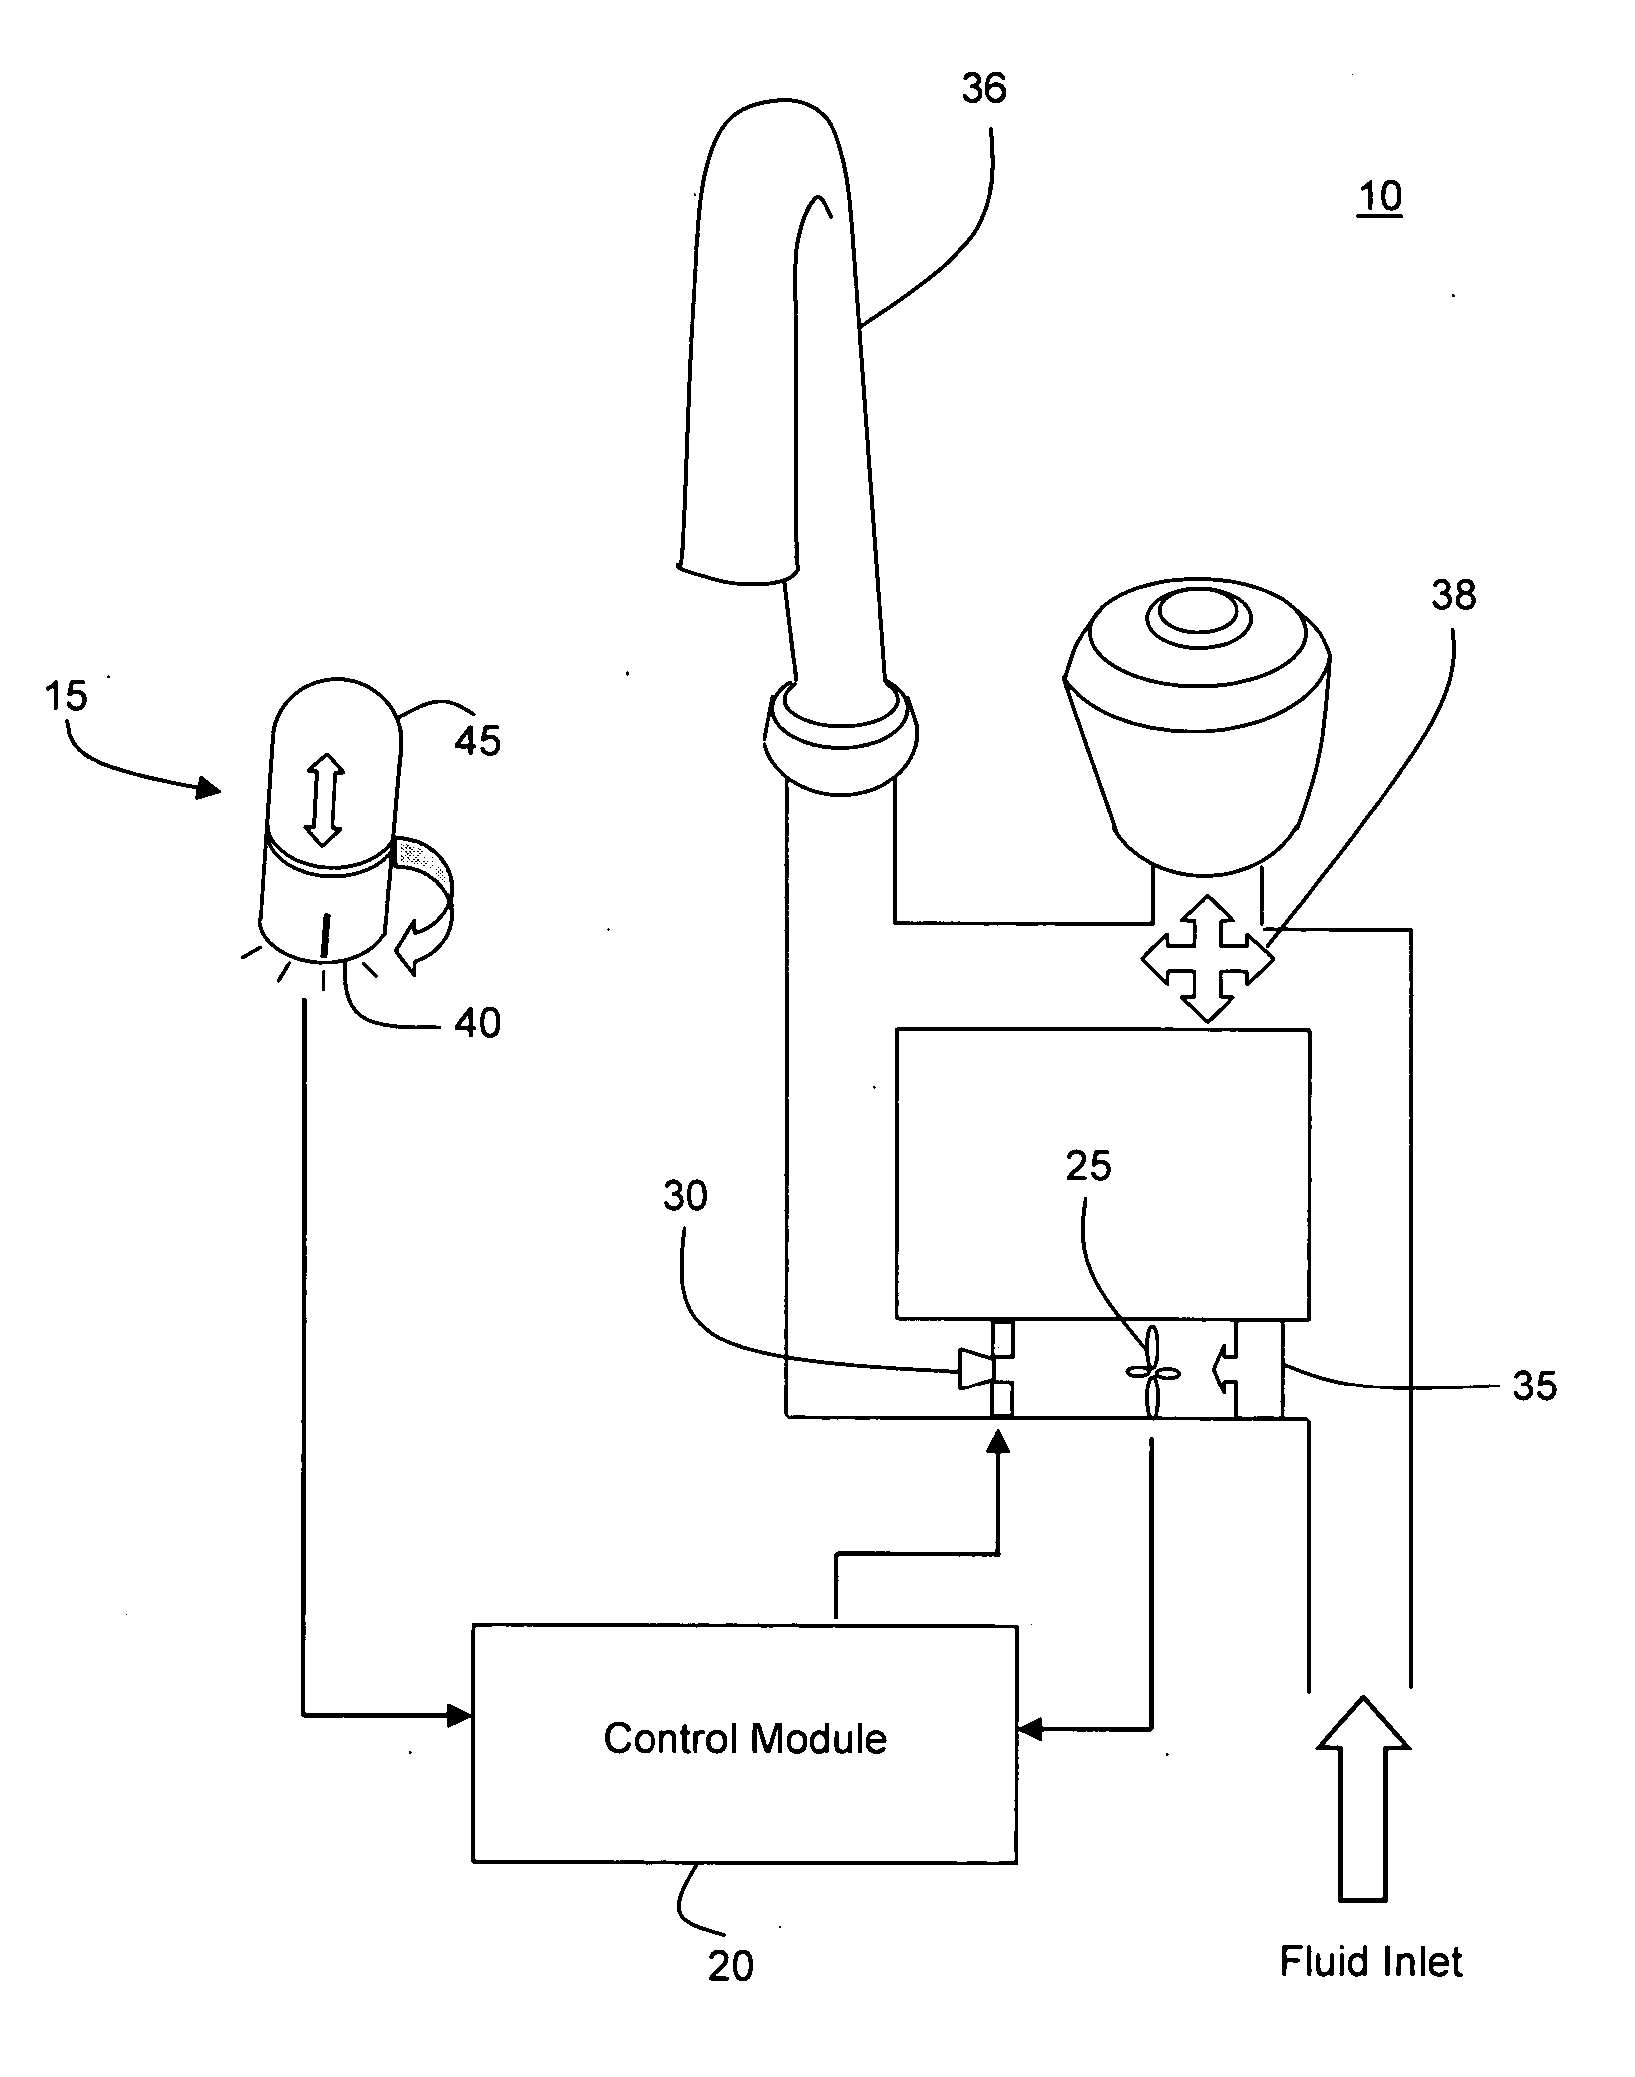 Volumetric Control Apparatus for Fluid Dispensing